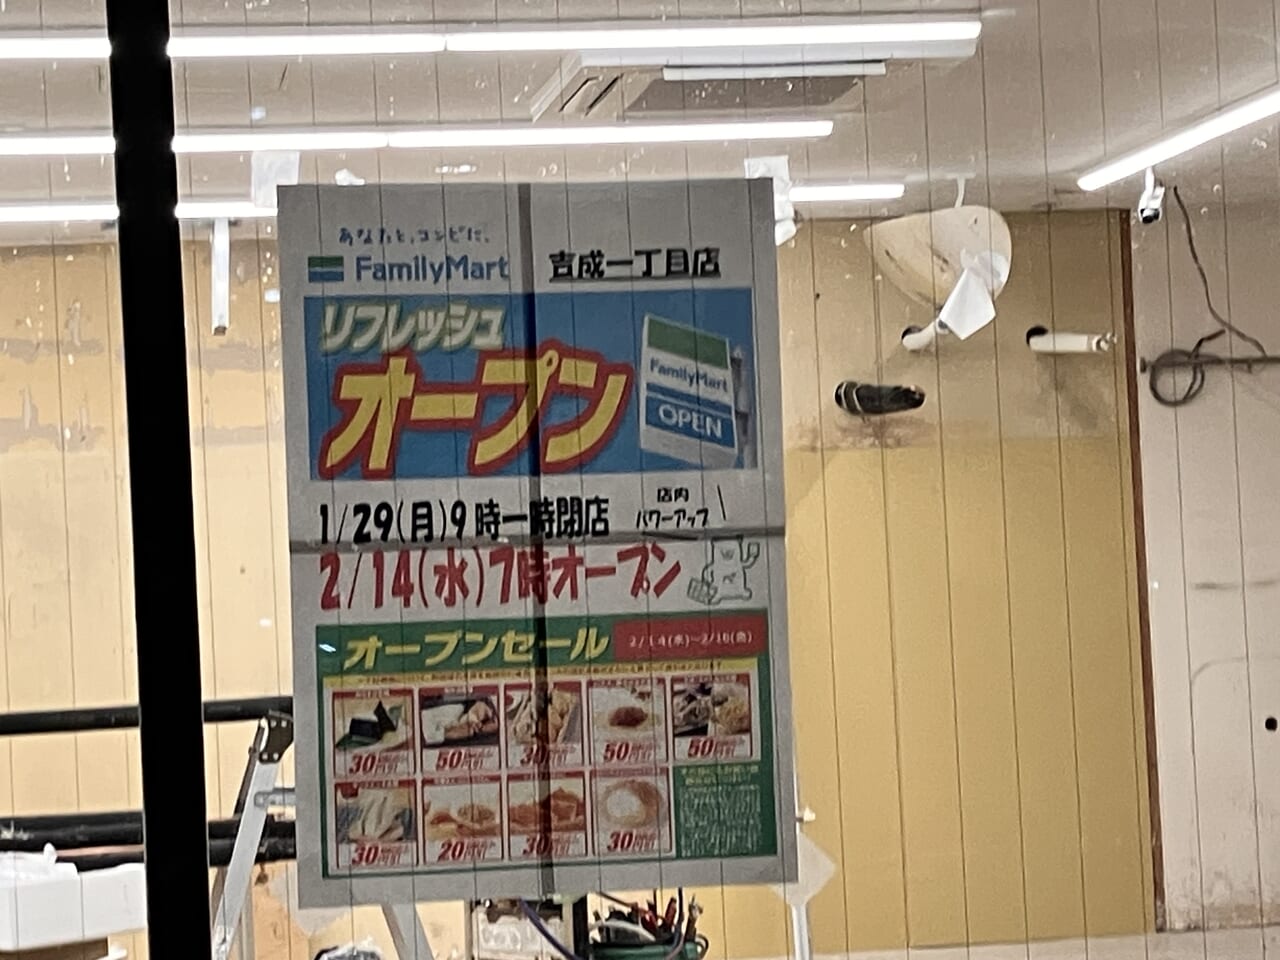 ファミリーマート 吉成一丁目店のオープン情報